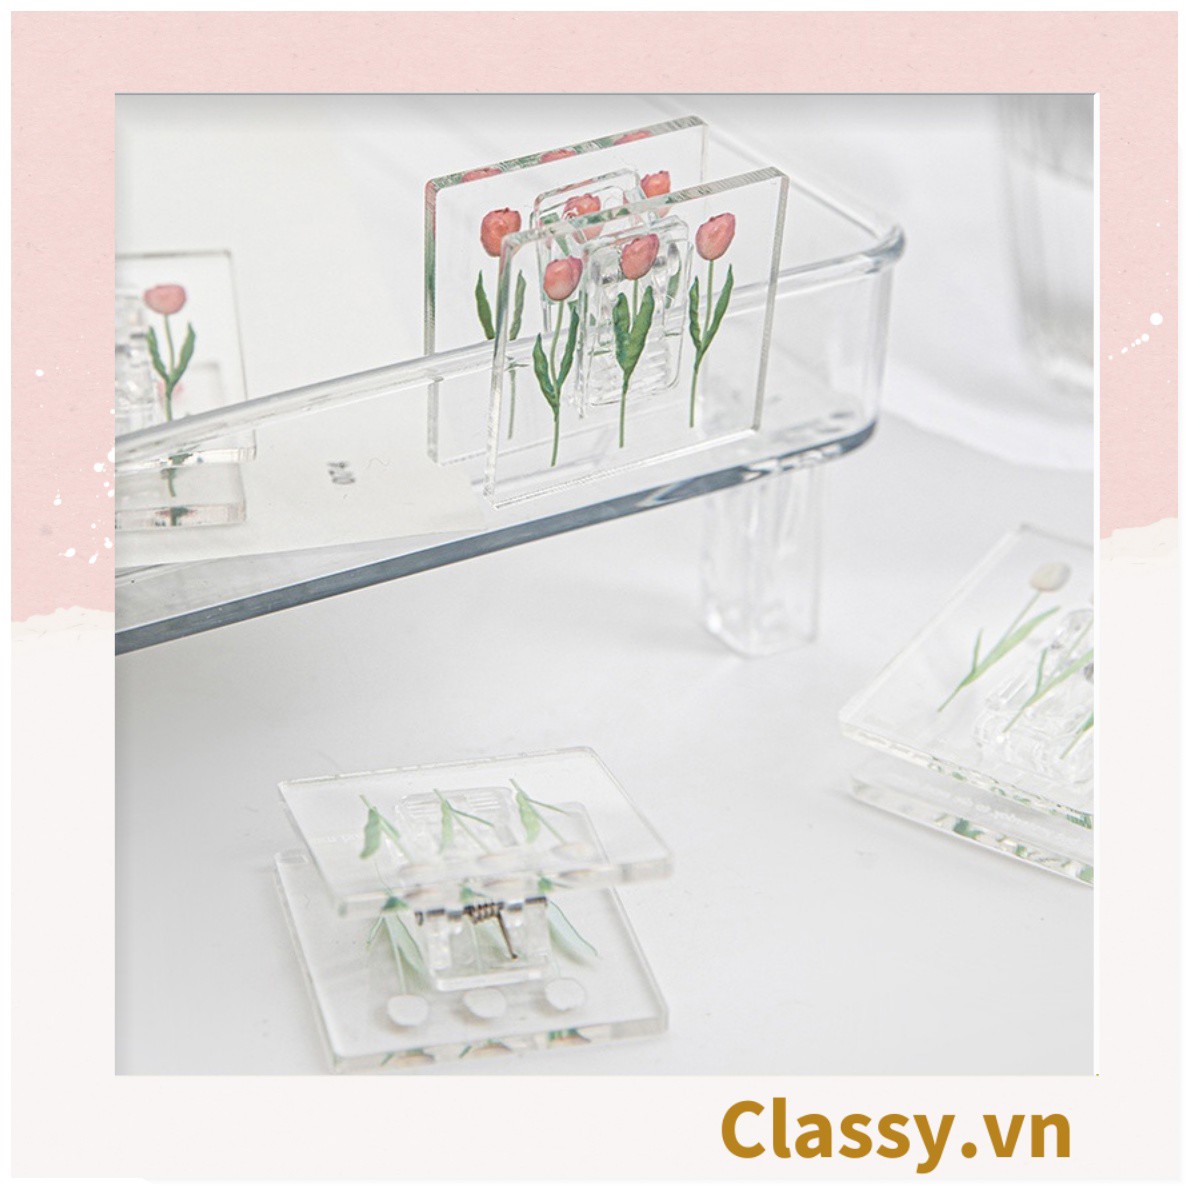 Kẹp giấy nhựa Acrylic trong suốt hoa tulips sử dụng kẹp dấu trang, kẹp giấy ,văn phòng phẩm sáng tạo tiện lợi PK937